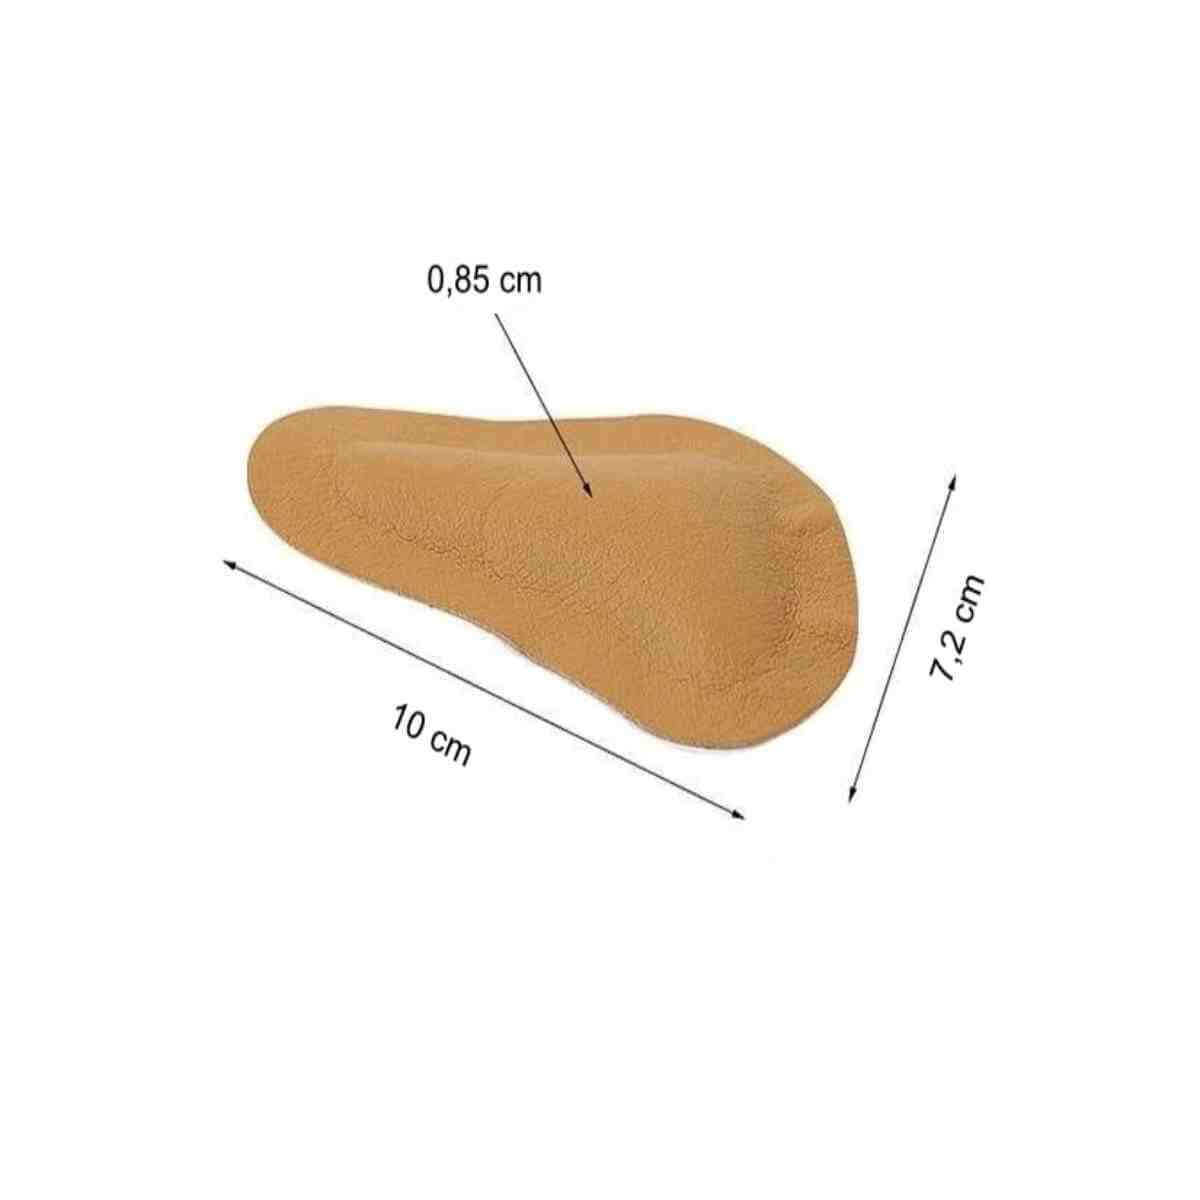 Køb forfodsindlæg til ømme fodballer - Vores forfodspelotte lindrer smerter fra nedsunken forfod ved pres fra sko og underlag - 10 x 7,2 cm. Køb 1 par såler, der løfter forfoden ved forfodsfald. Lav pris.